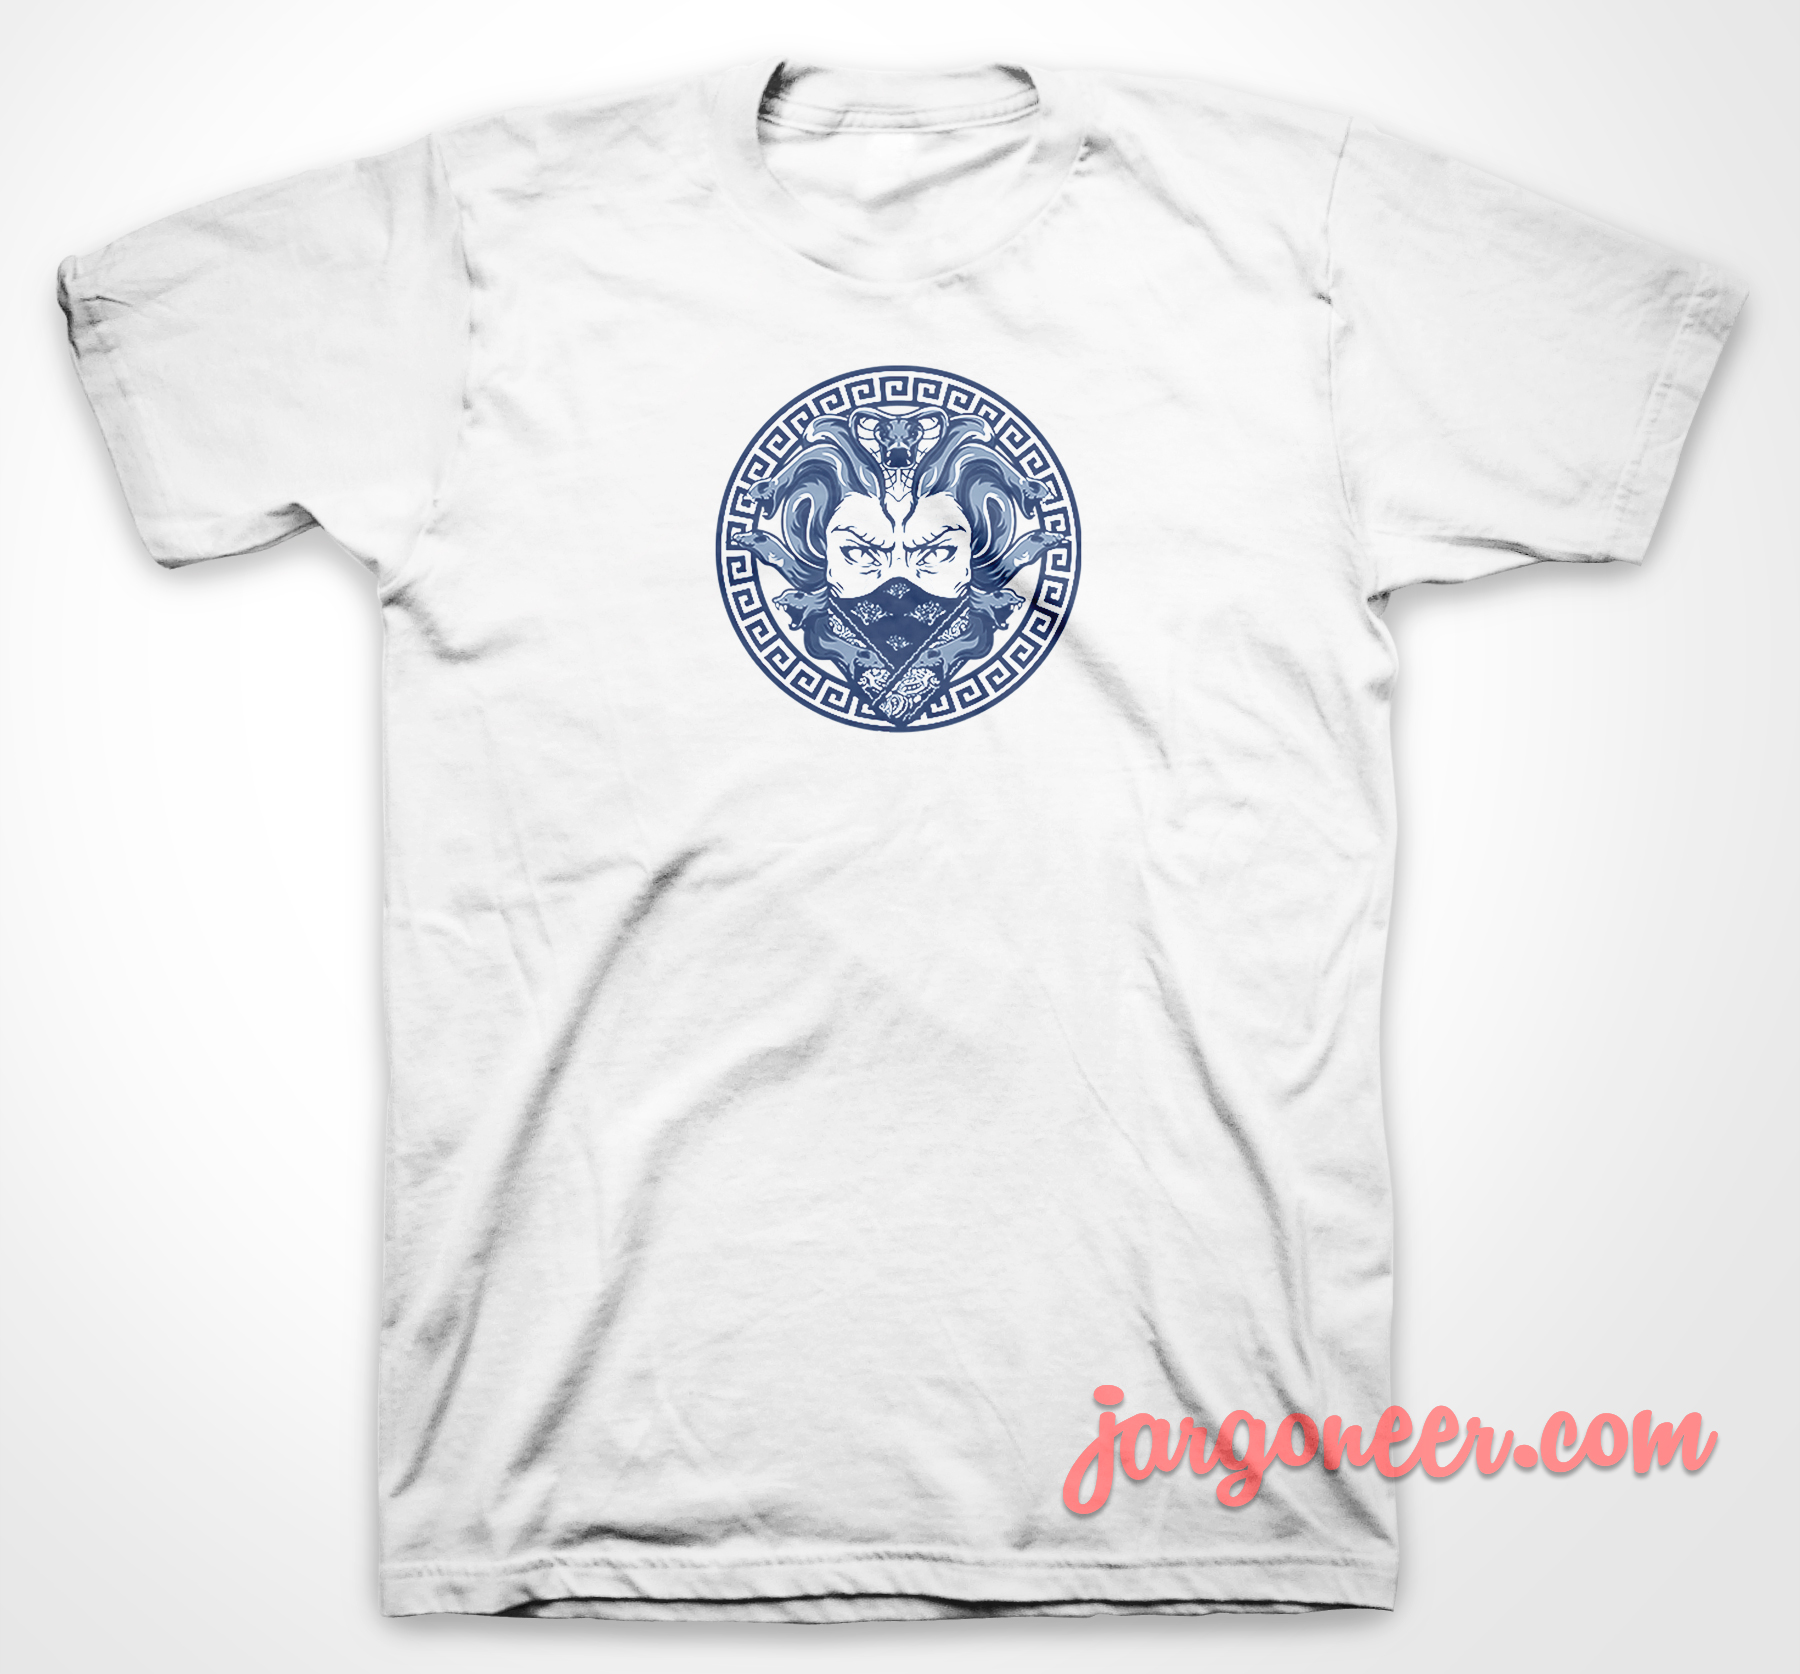 Medusa Gang - Shop Unique Graphic Cool Shirt Designs